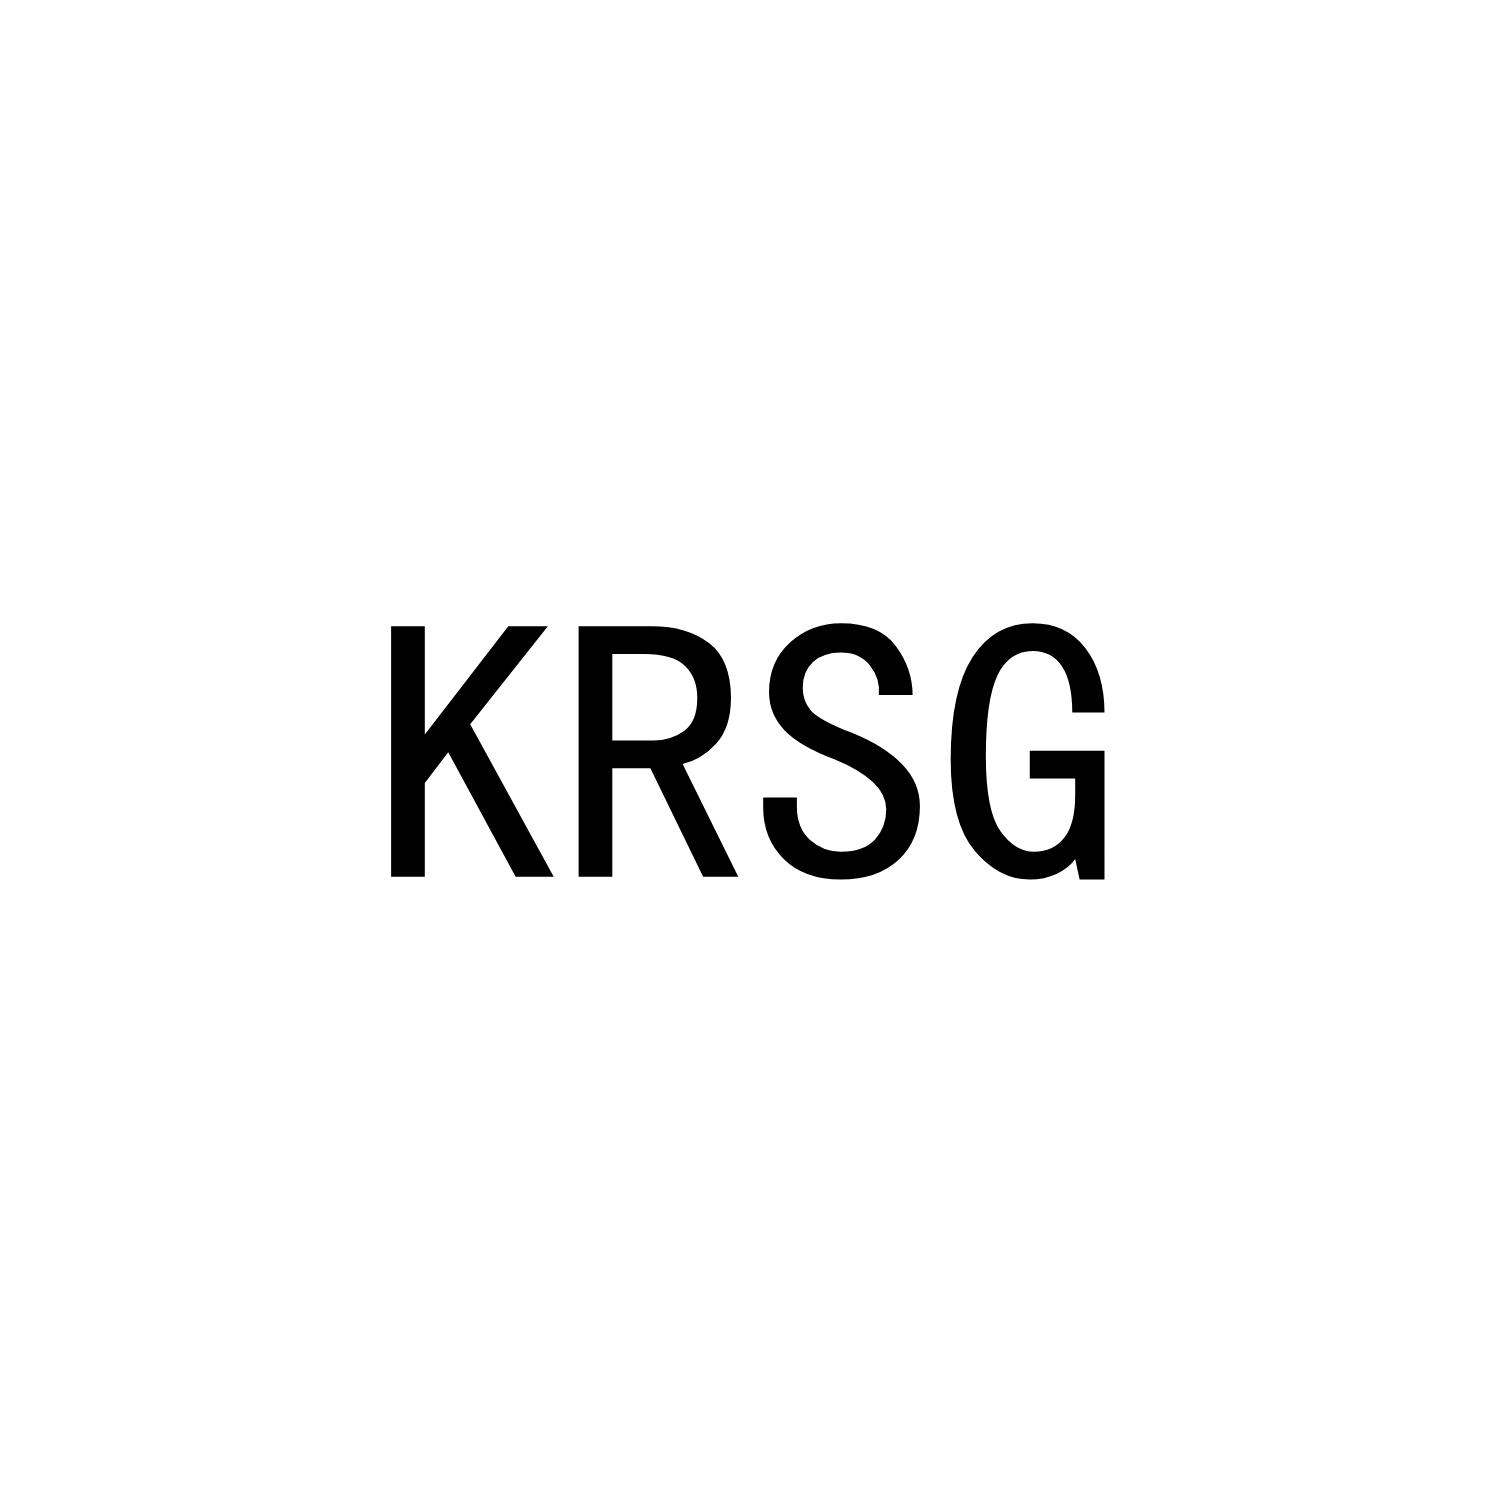 KRSG